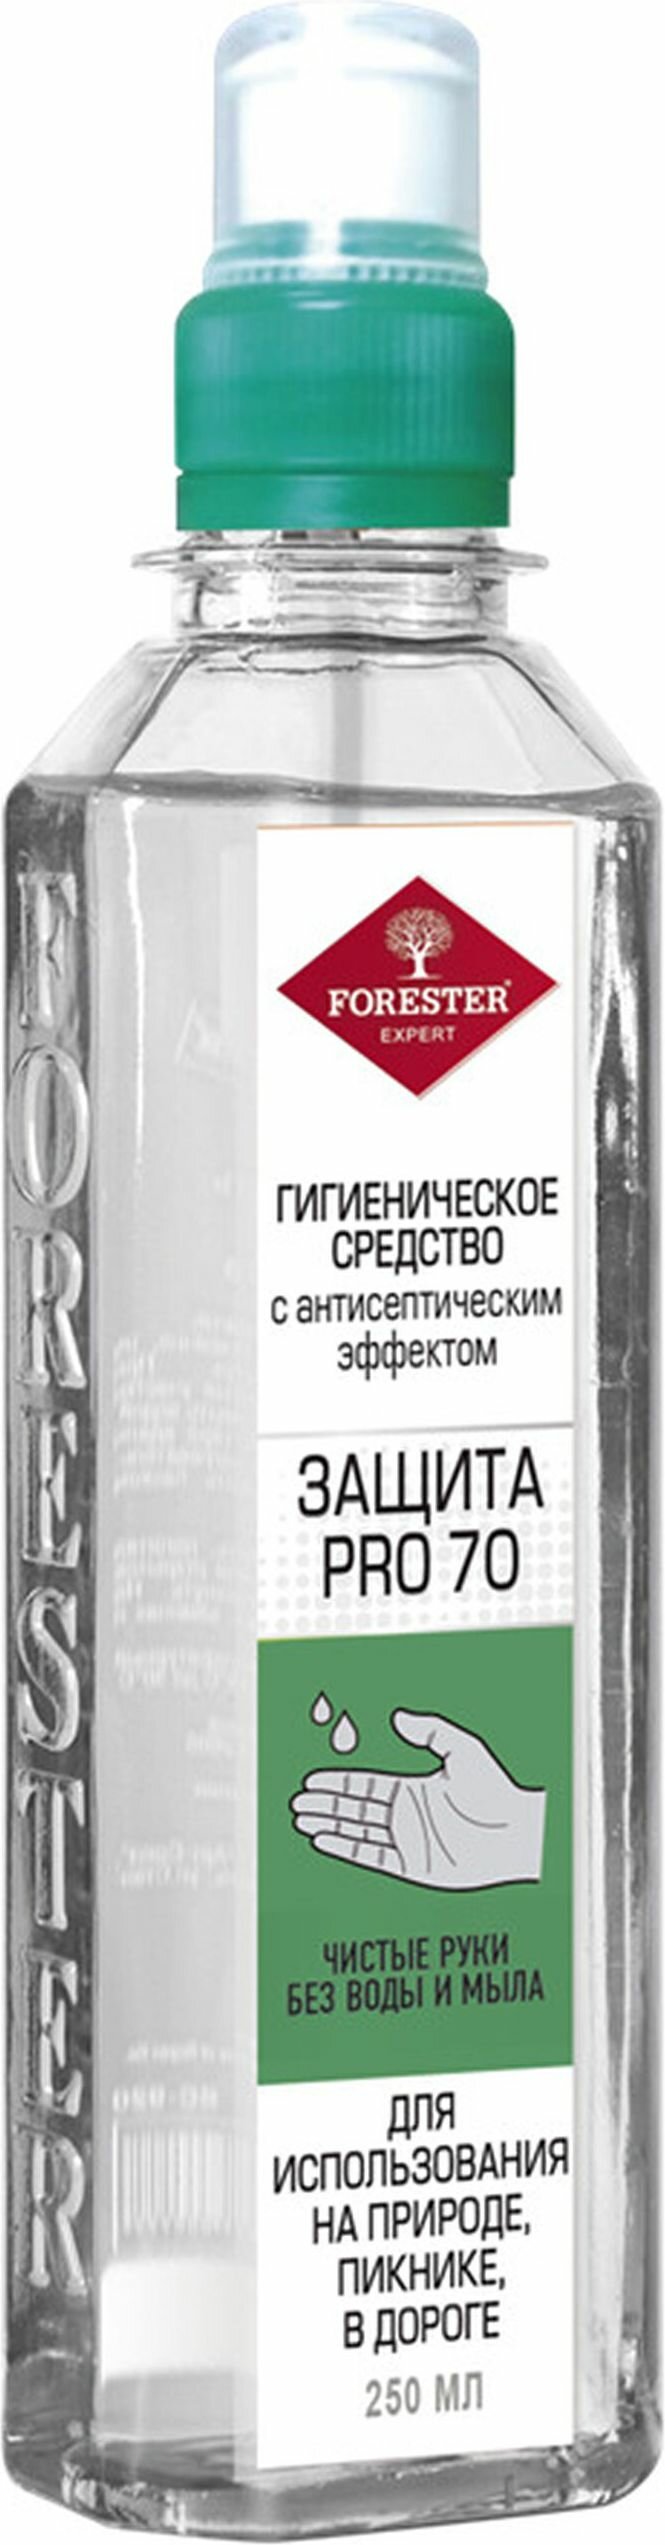 Гигиеническое средство FORESTER с антисептическим эффектом 250 мл - фото №1